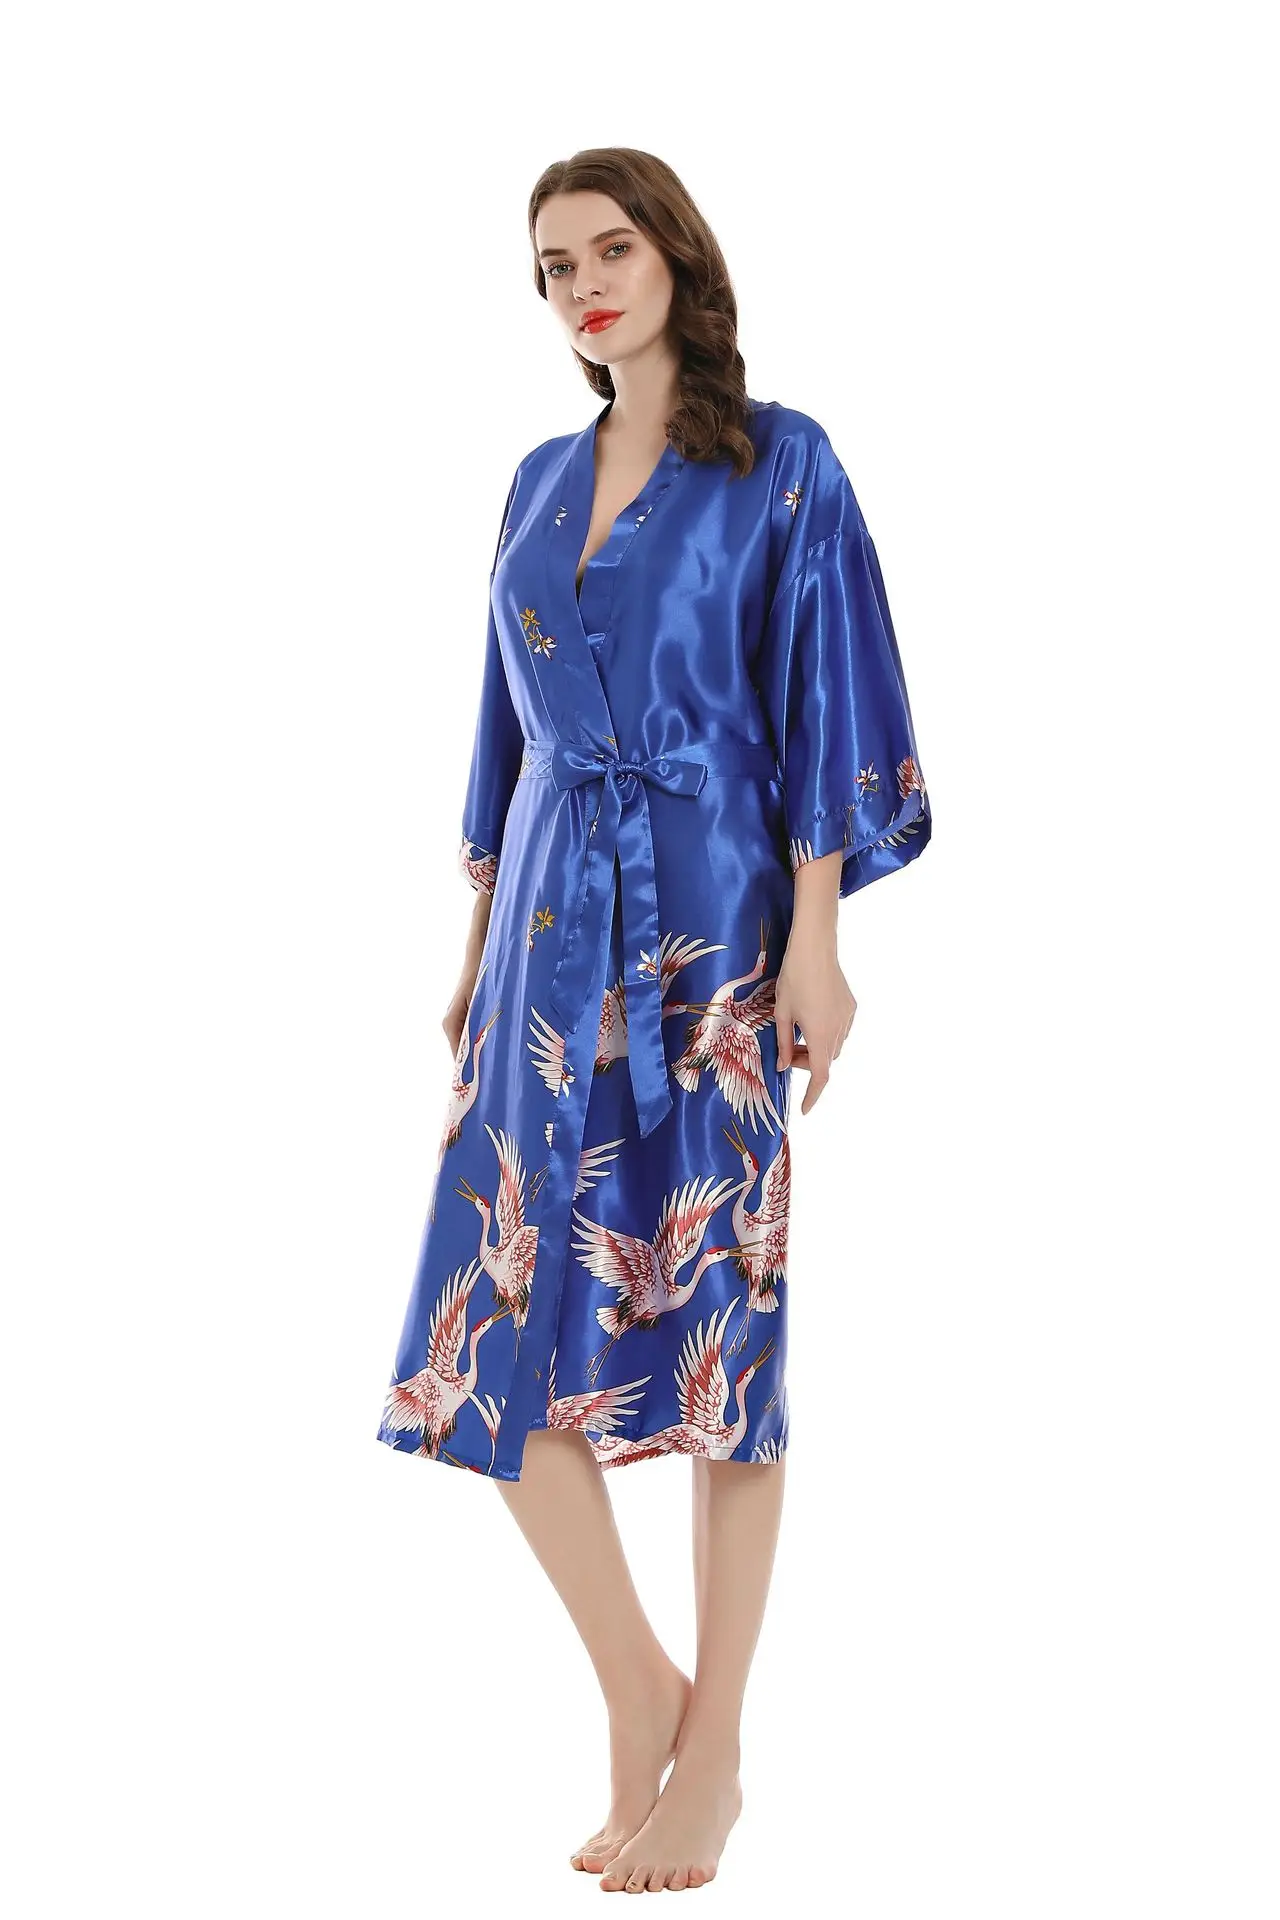 Seksowne kobiety długa suknia z kieszenią panna młoda druhna szlafrok Rayon Kimono szlafrok duży rozmiar s-xxxl sukienka wieczorowa